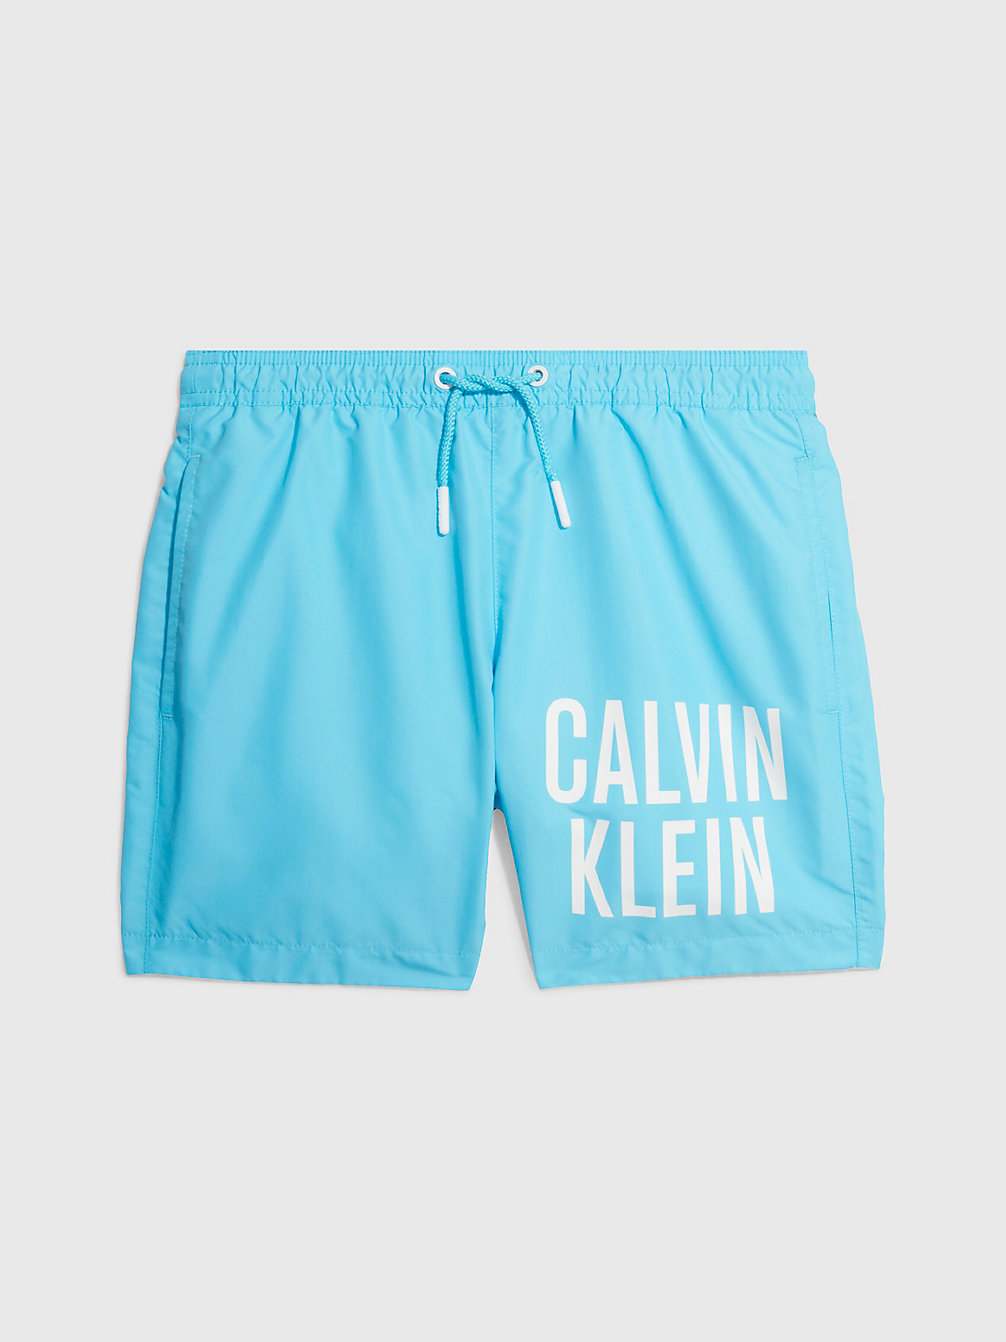 BLUE TIDE > Jongenszwemshort - Intense Power > undefined jongens - Calvin Klein